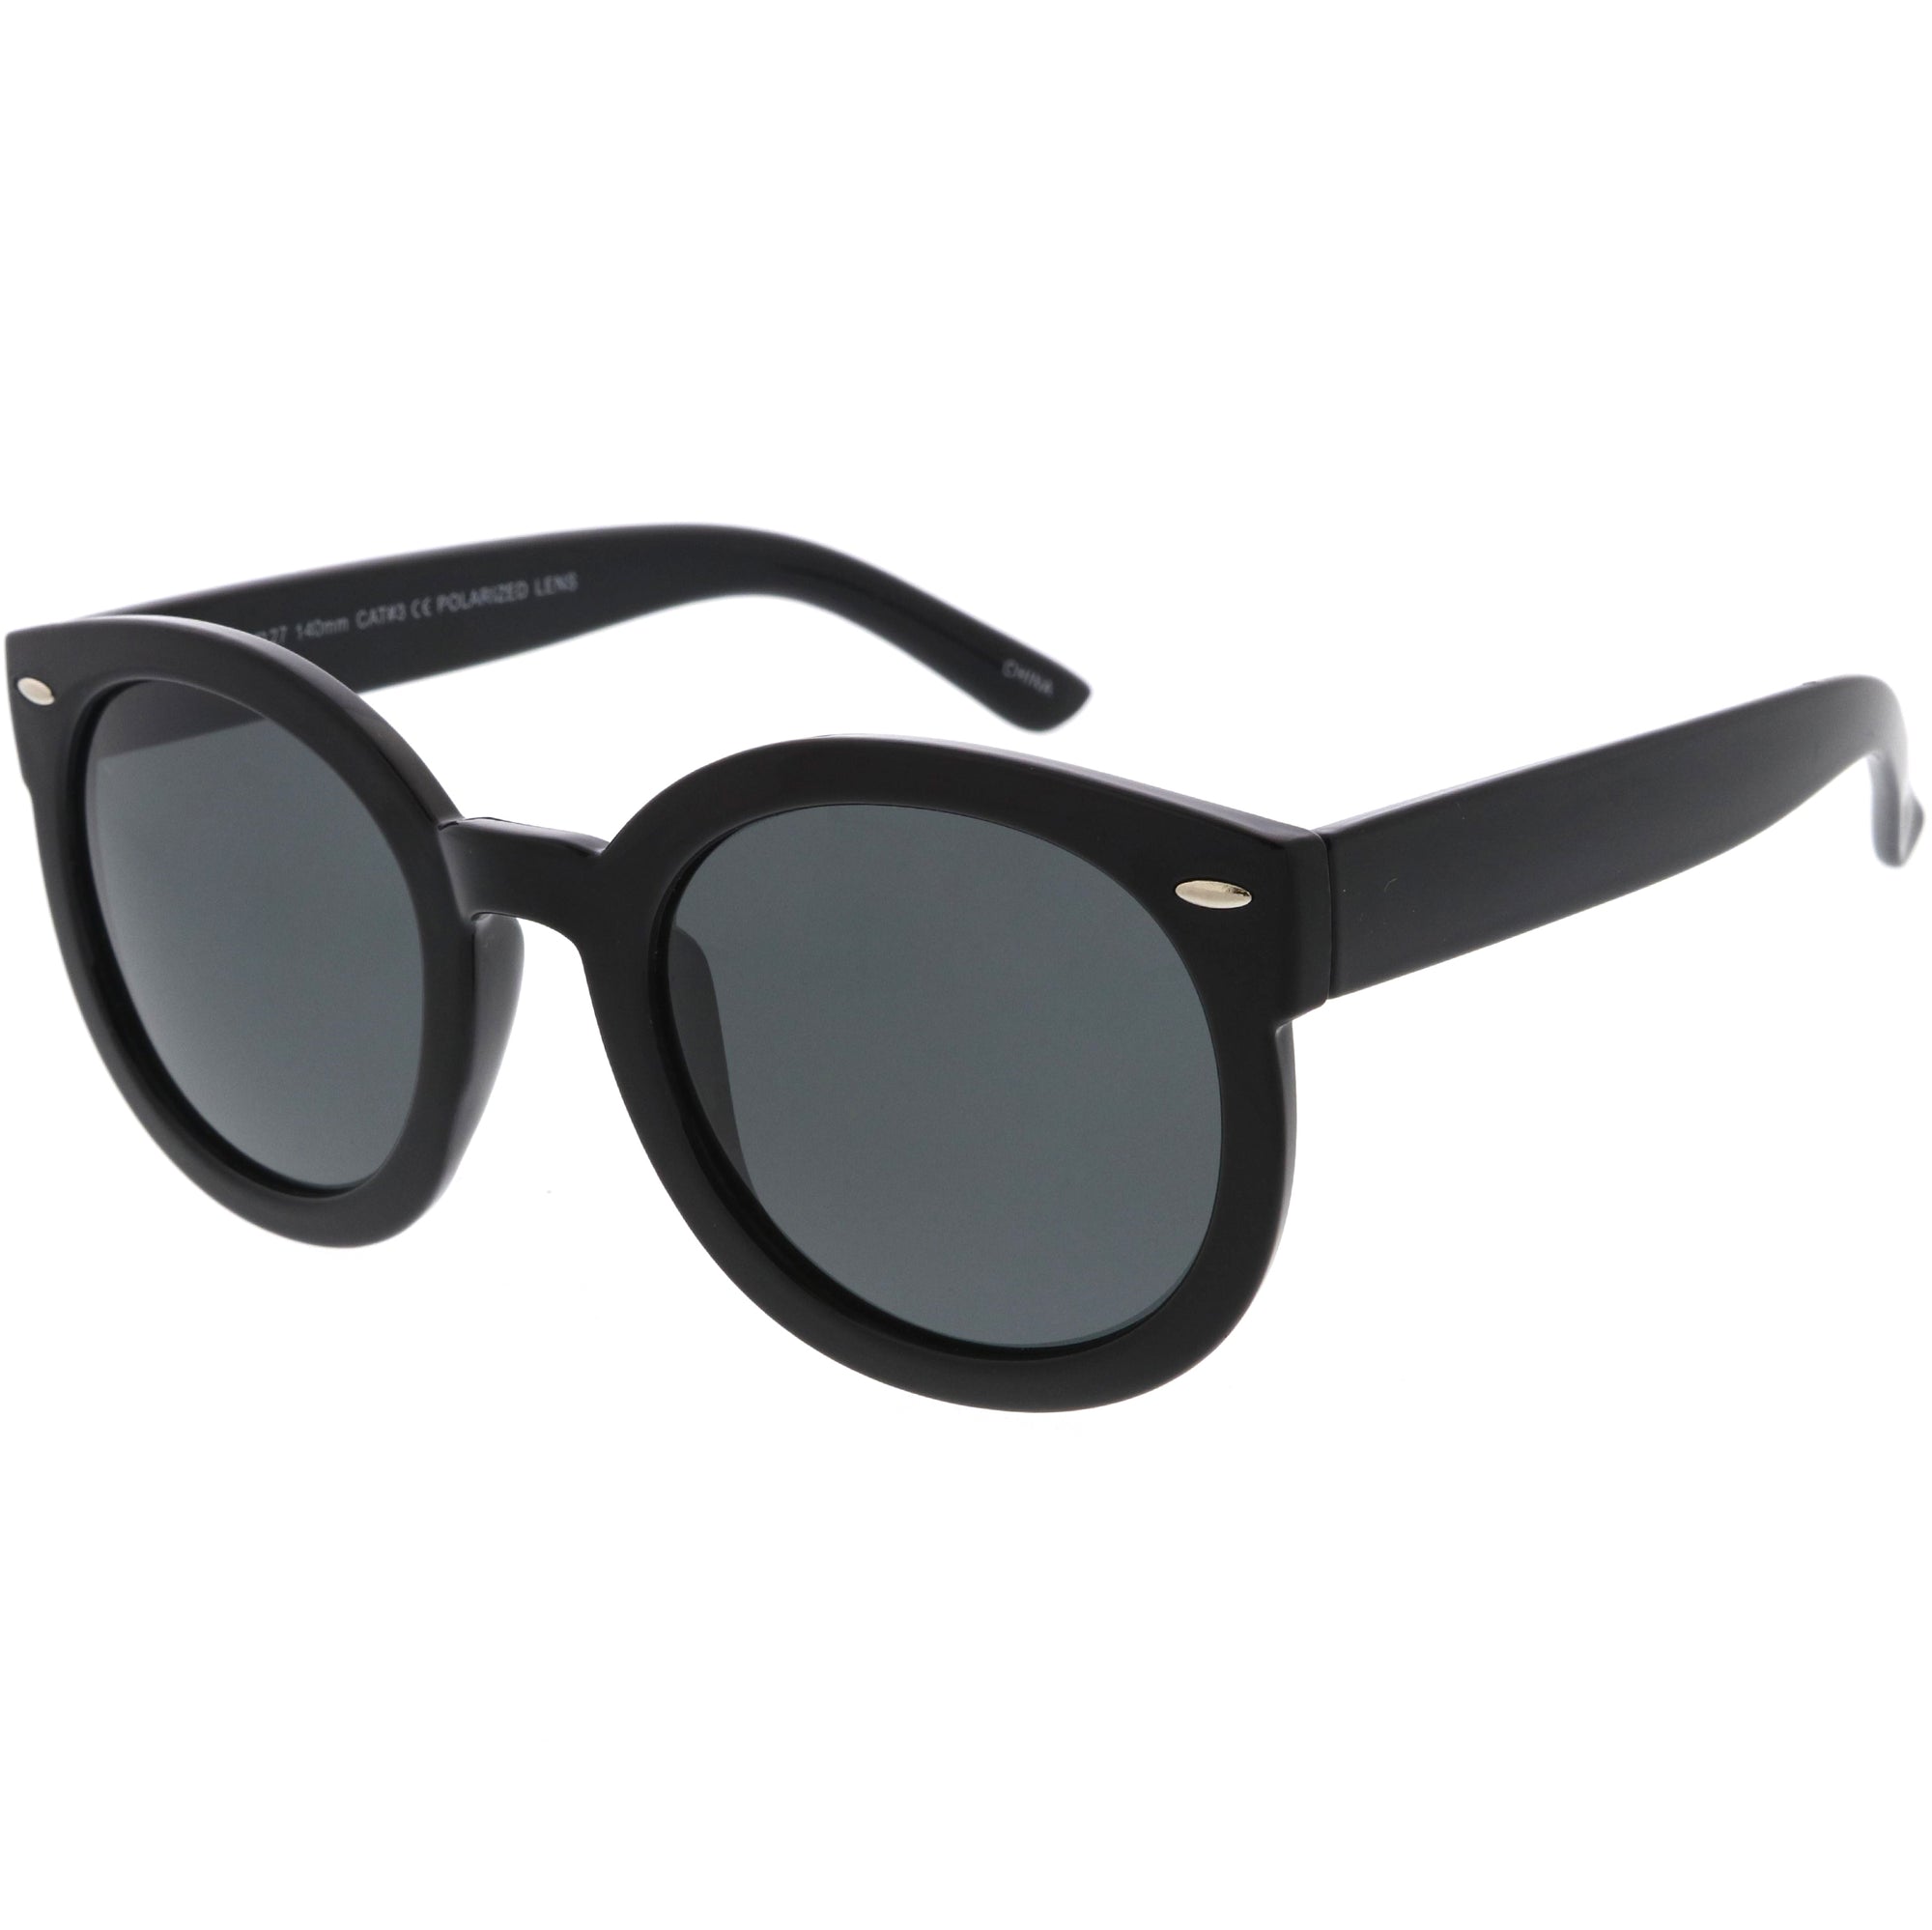 Polarized Inspired High Fashion Oversize Round Sunglasses - zeroUV